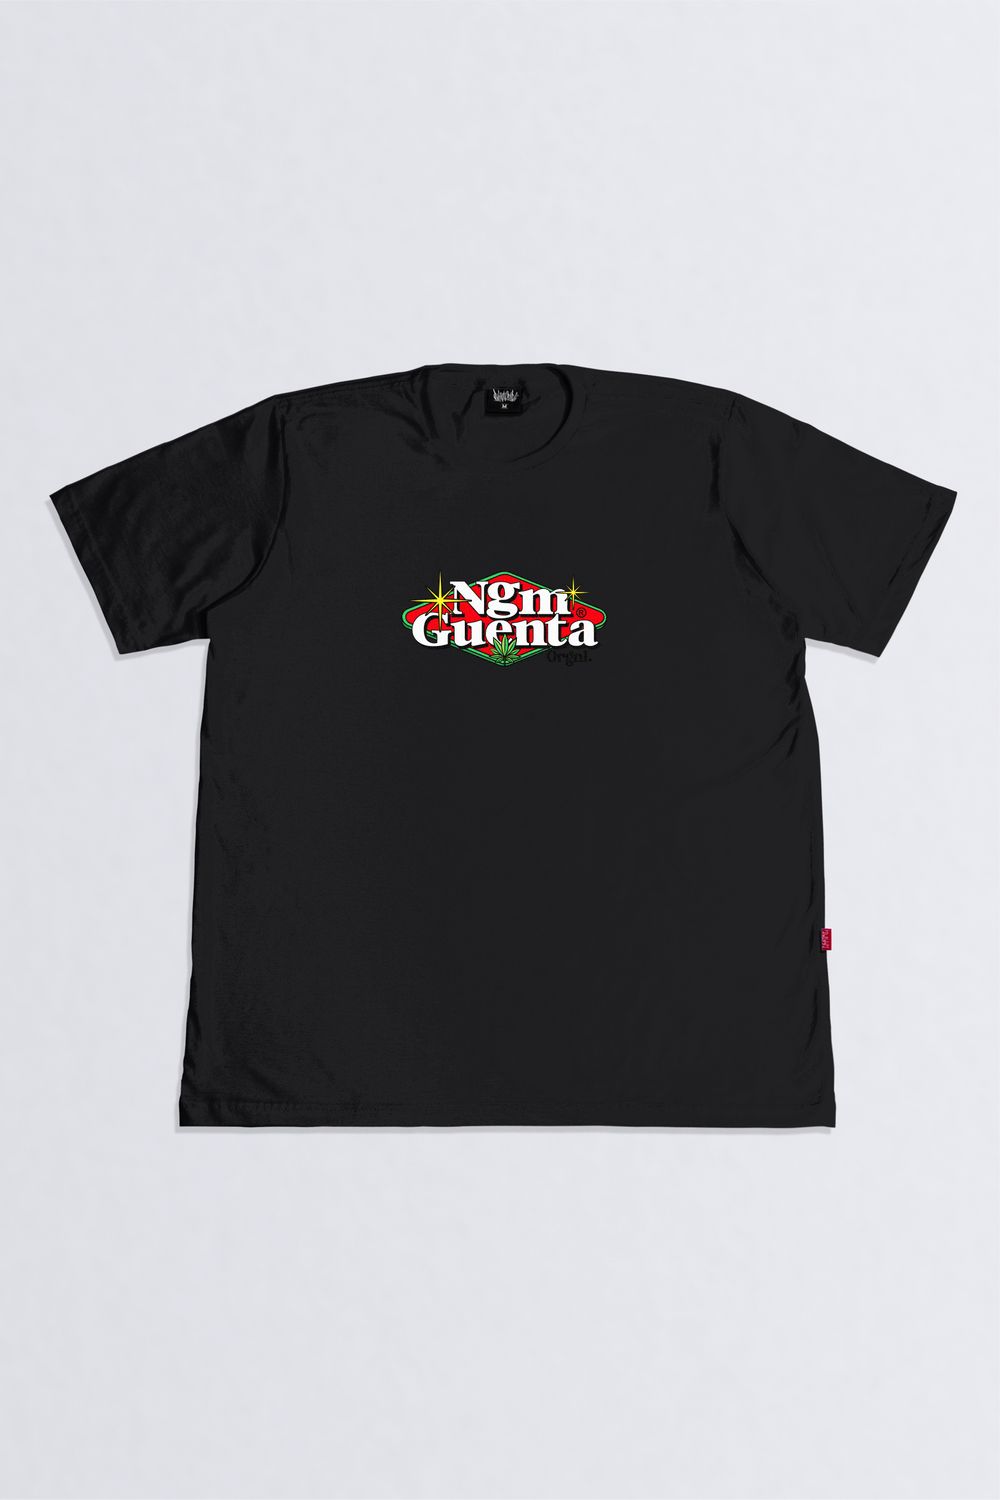 Camiseta Chronic Cassino - Comprar em Santos Skate Shop